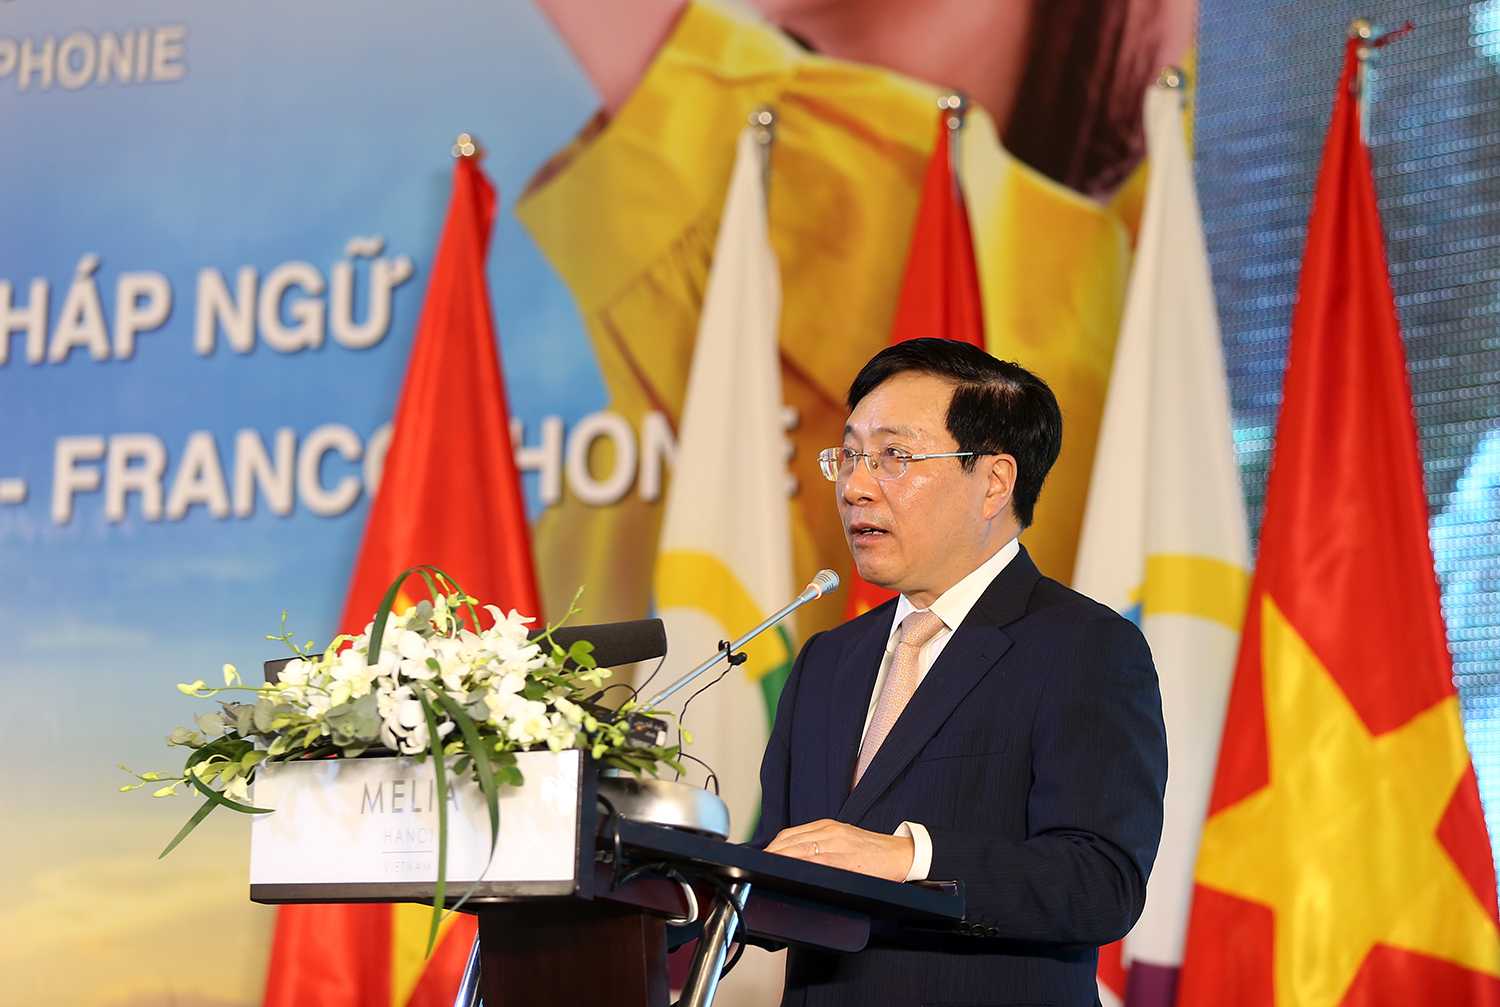 Việt Nam ủng hộ hợp tác kinh tế mạnh mẽ trong không gian Pháp ngữ - Ảnh 1.